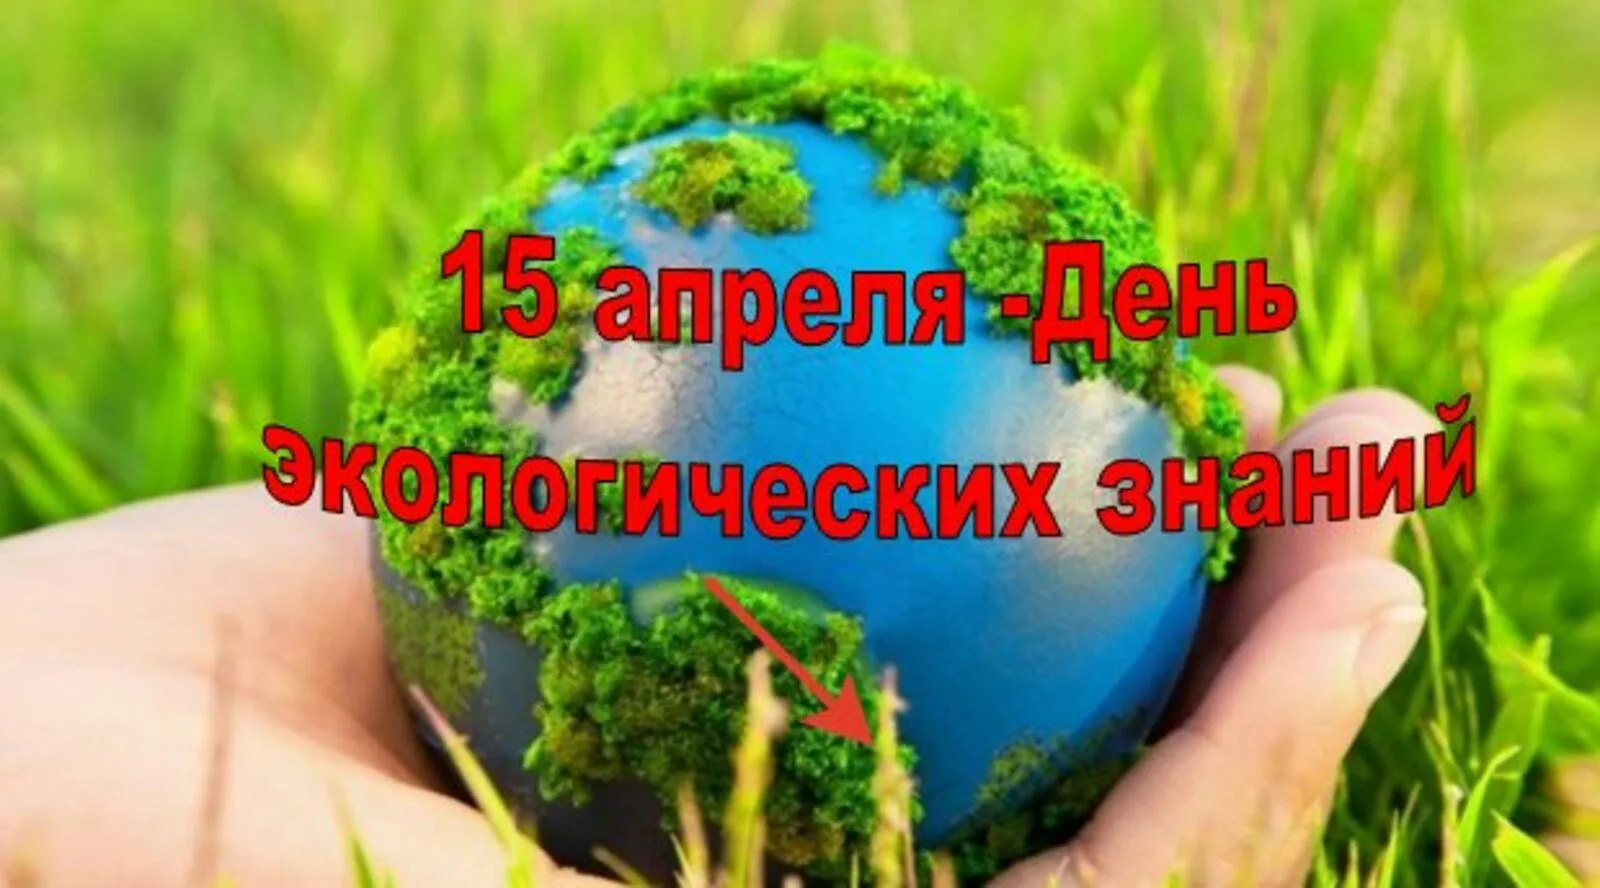 Какой праздник 15 апреля в россии. День экологических знаний. Всемирный день экологических знаний. Международный день экологических знаний 15 апреля. День экологической грамотности.